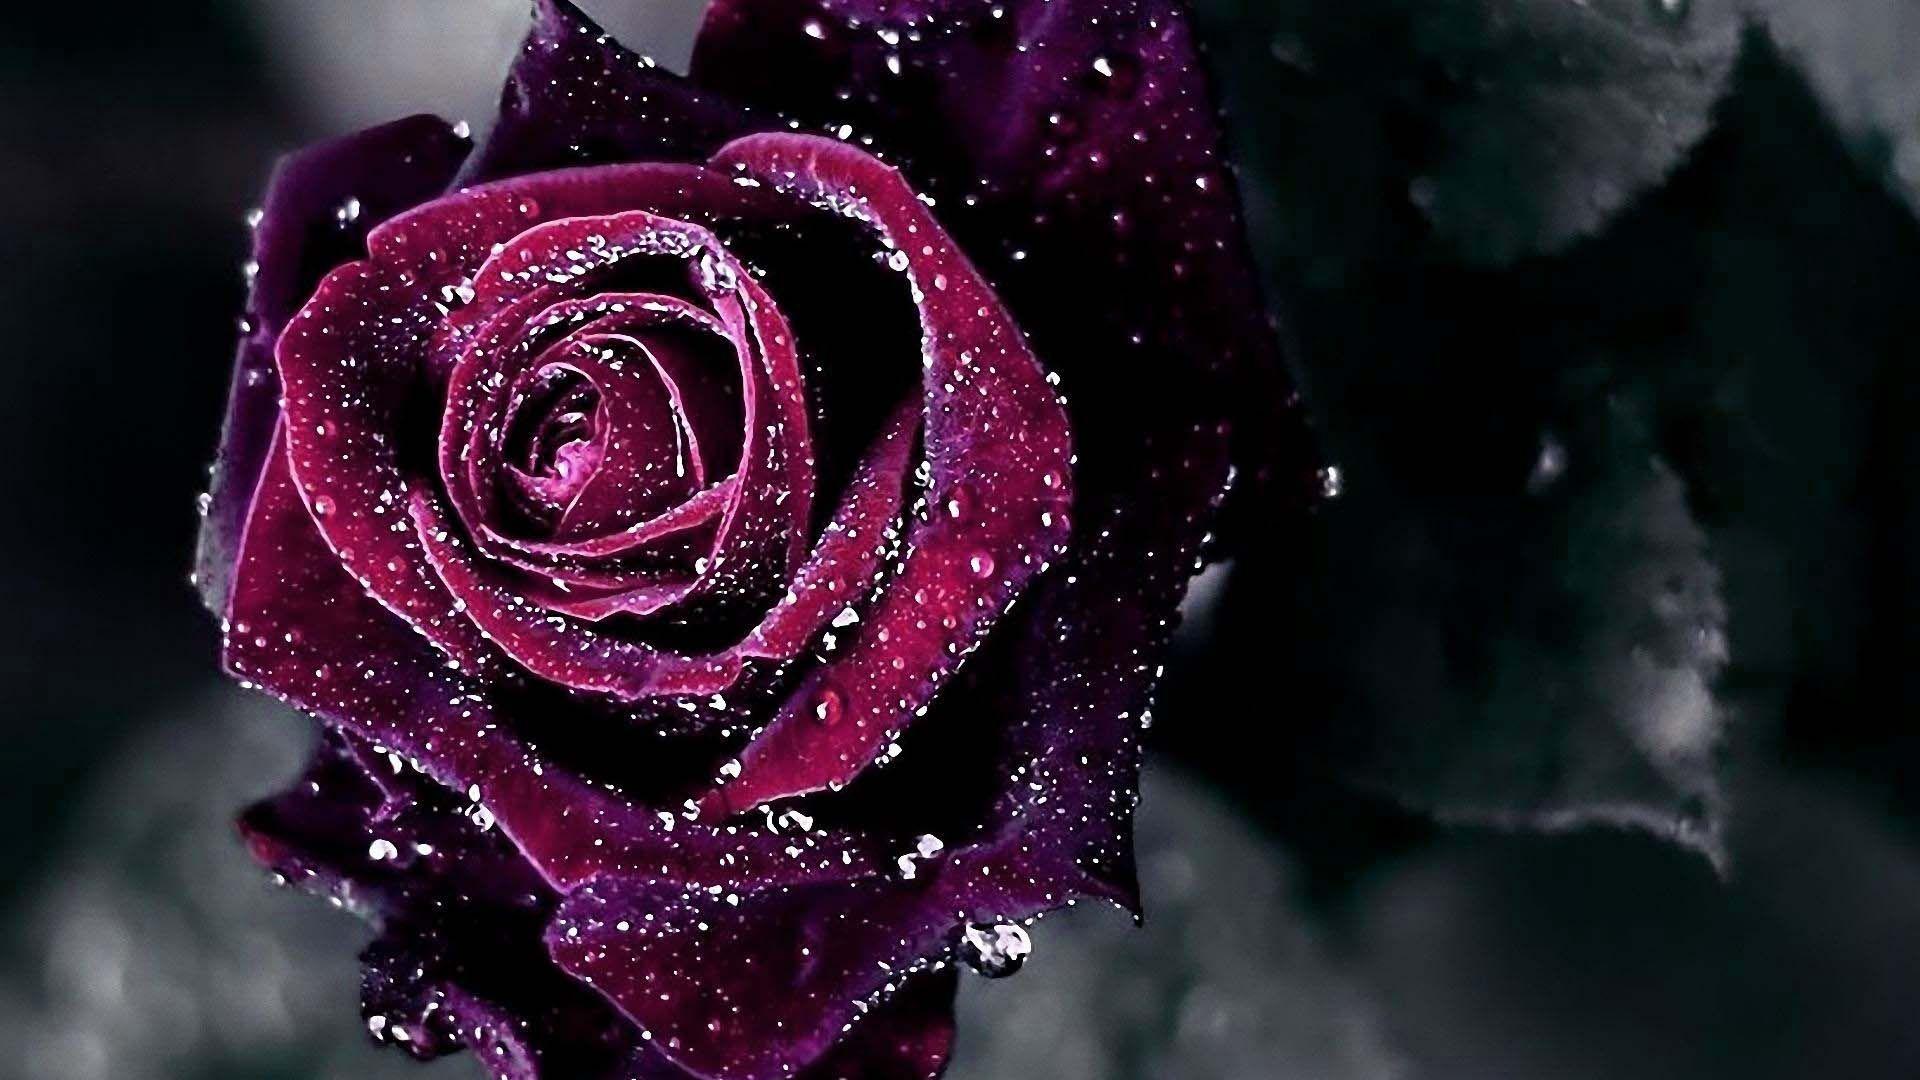 Wet Red Rose Wallpaper HD Desktop. Purple roses wallpaper, Rose